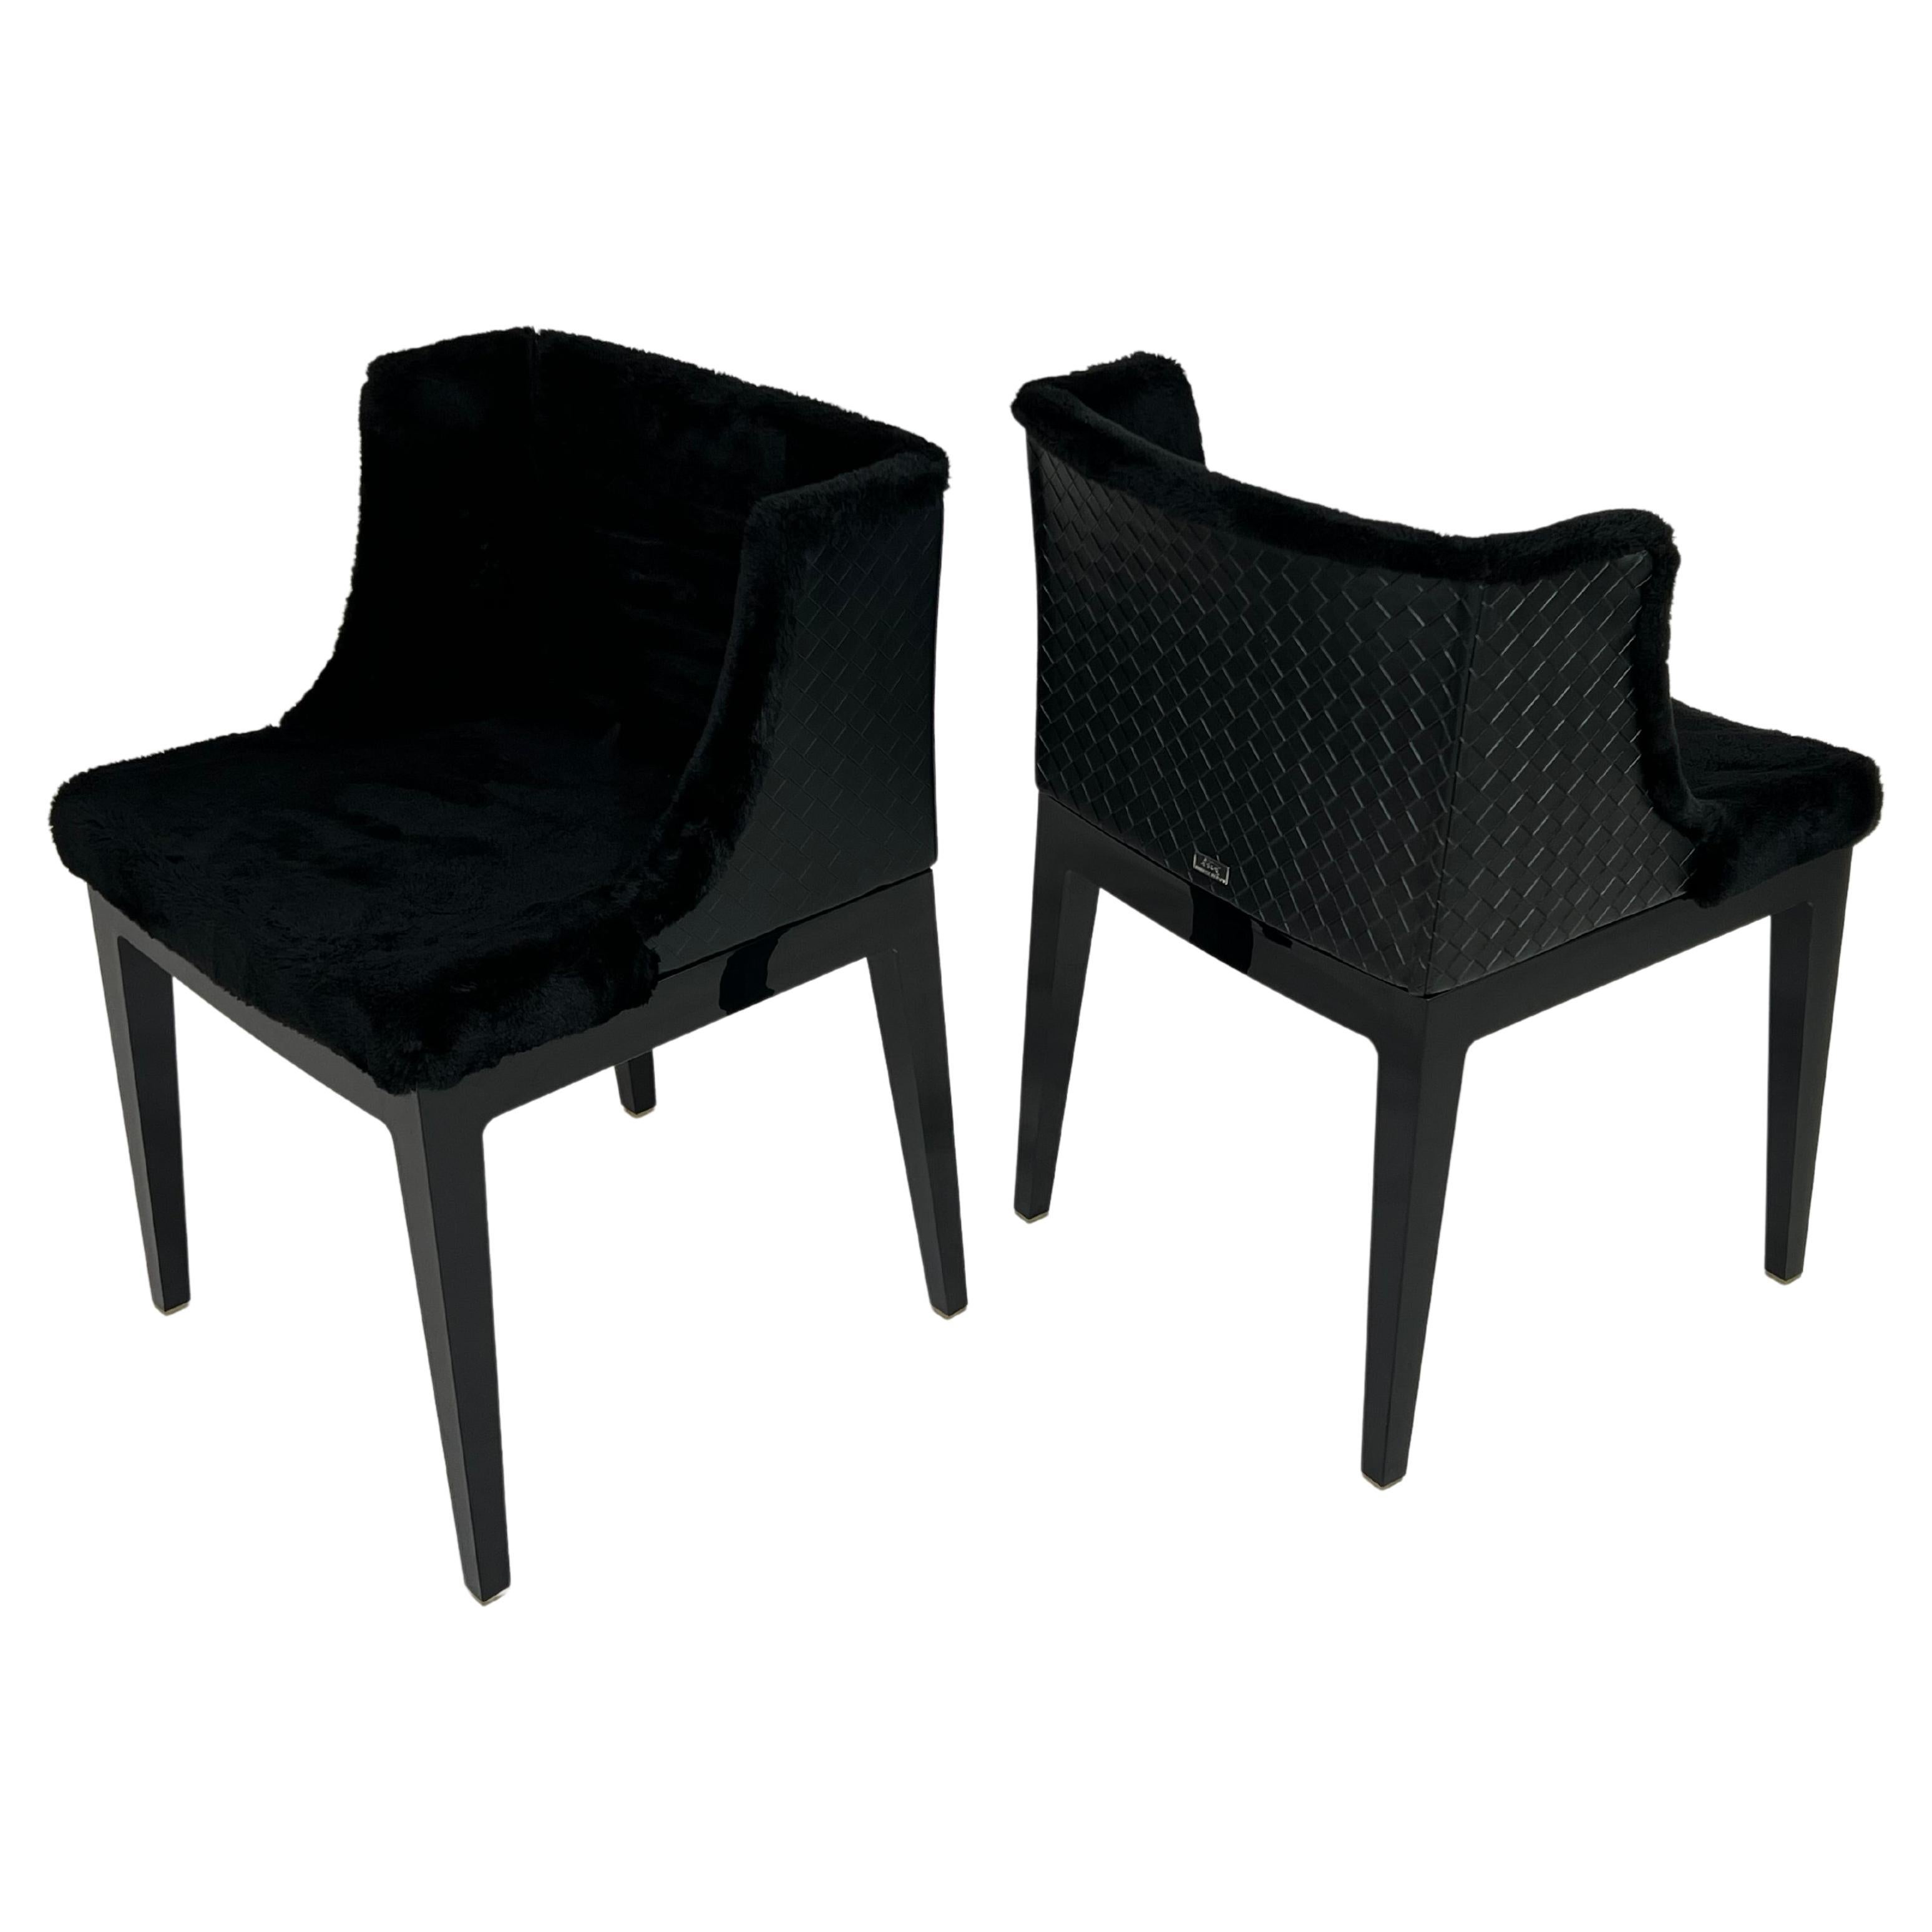 Philippe Starck and Lenny Kravitz Design Mademoiselle Kravitz Chairs for Kartell